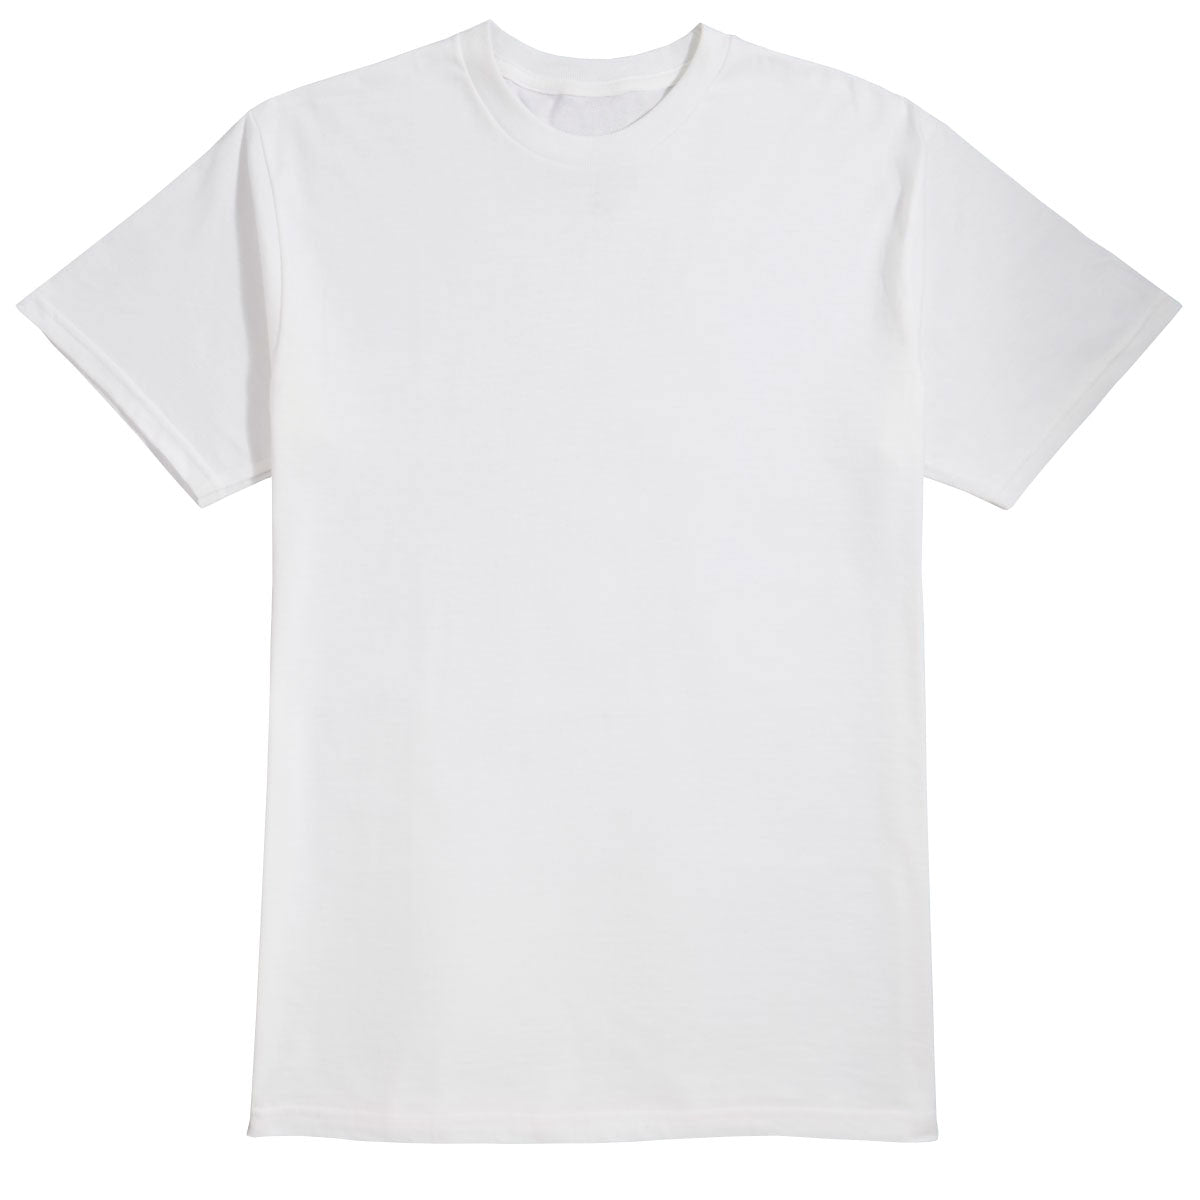 Alien Workshop Spectrum Color-Up T-Shirt - White - MD image 1